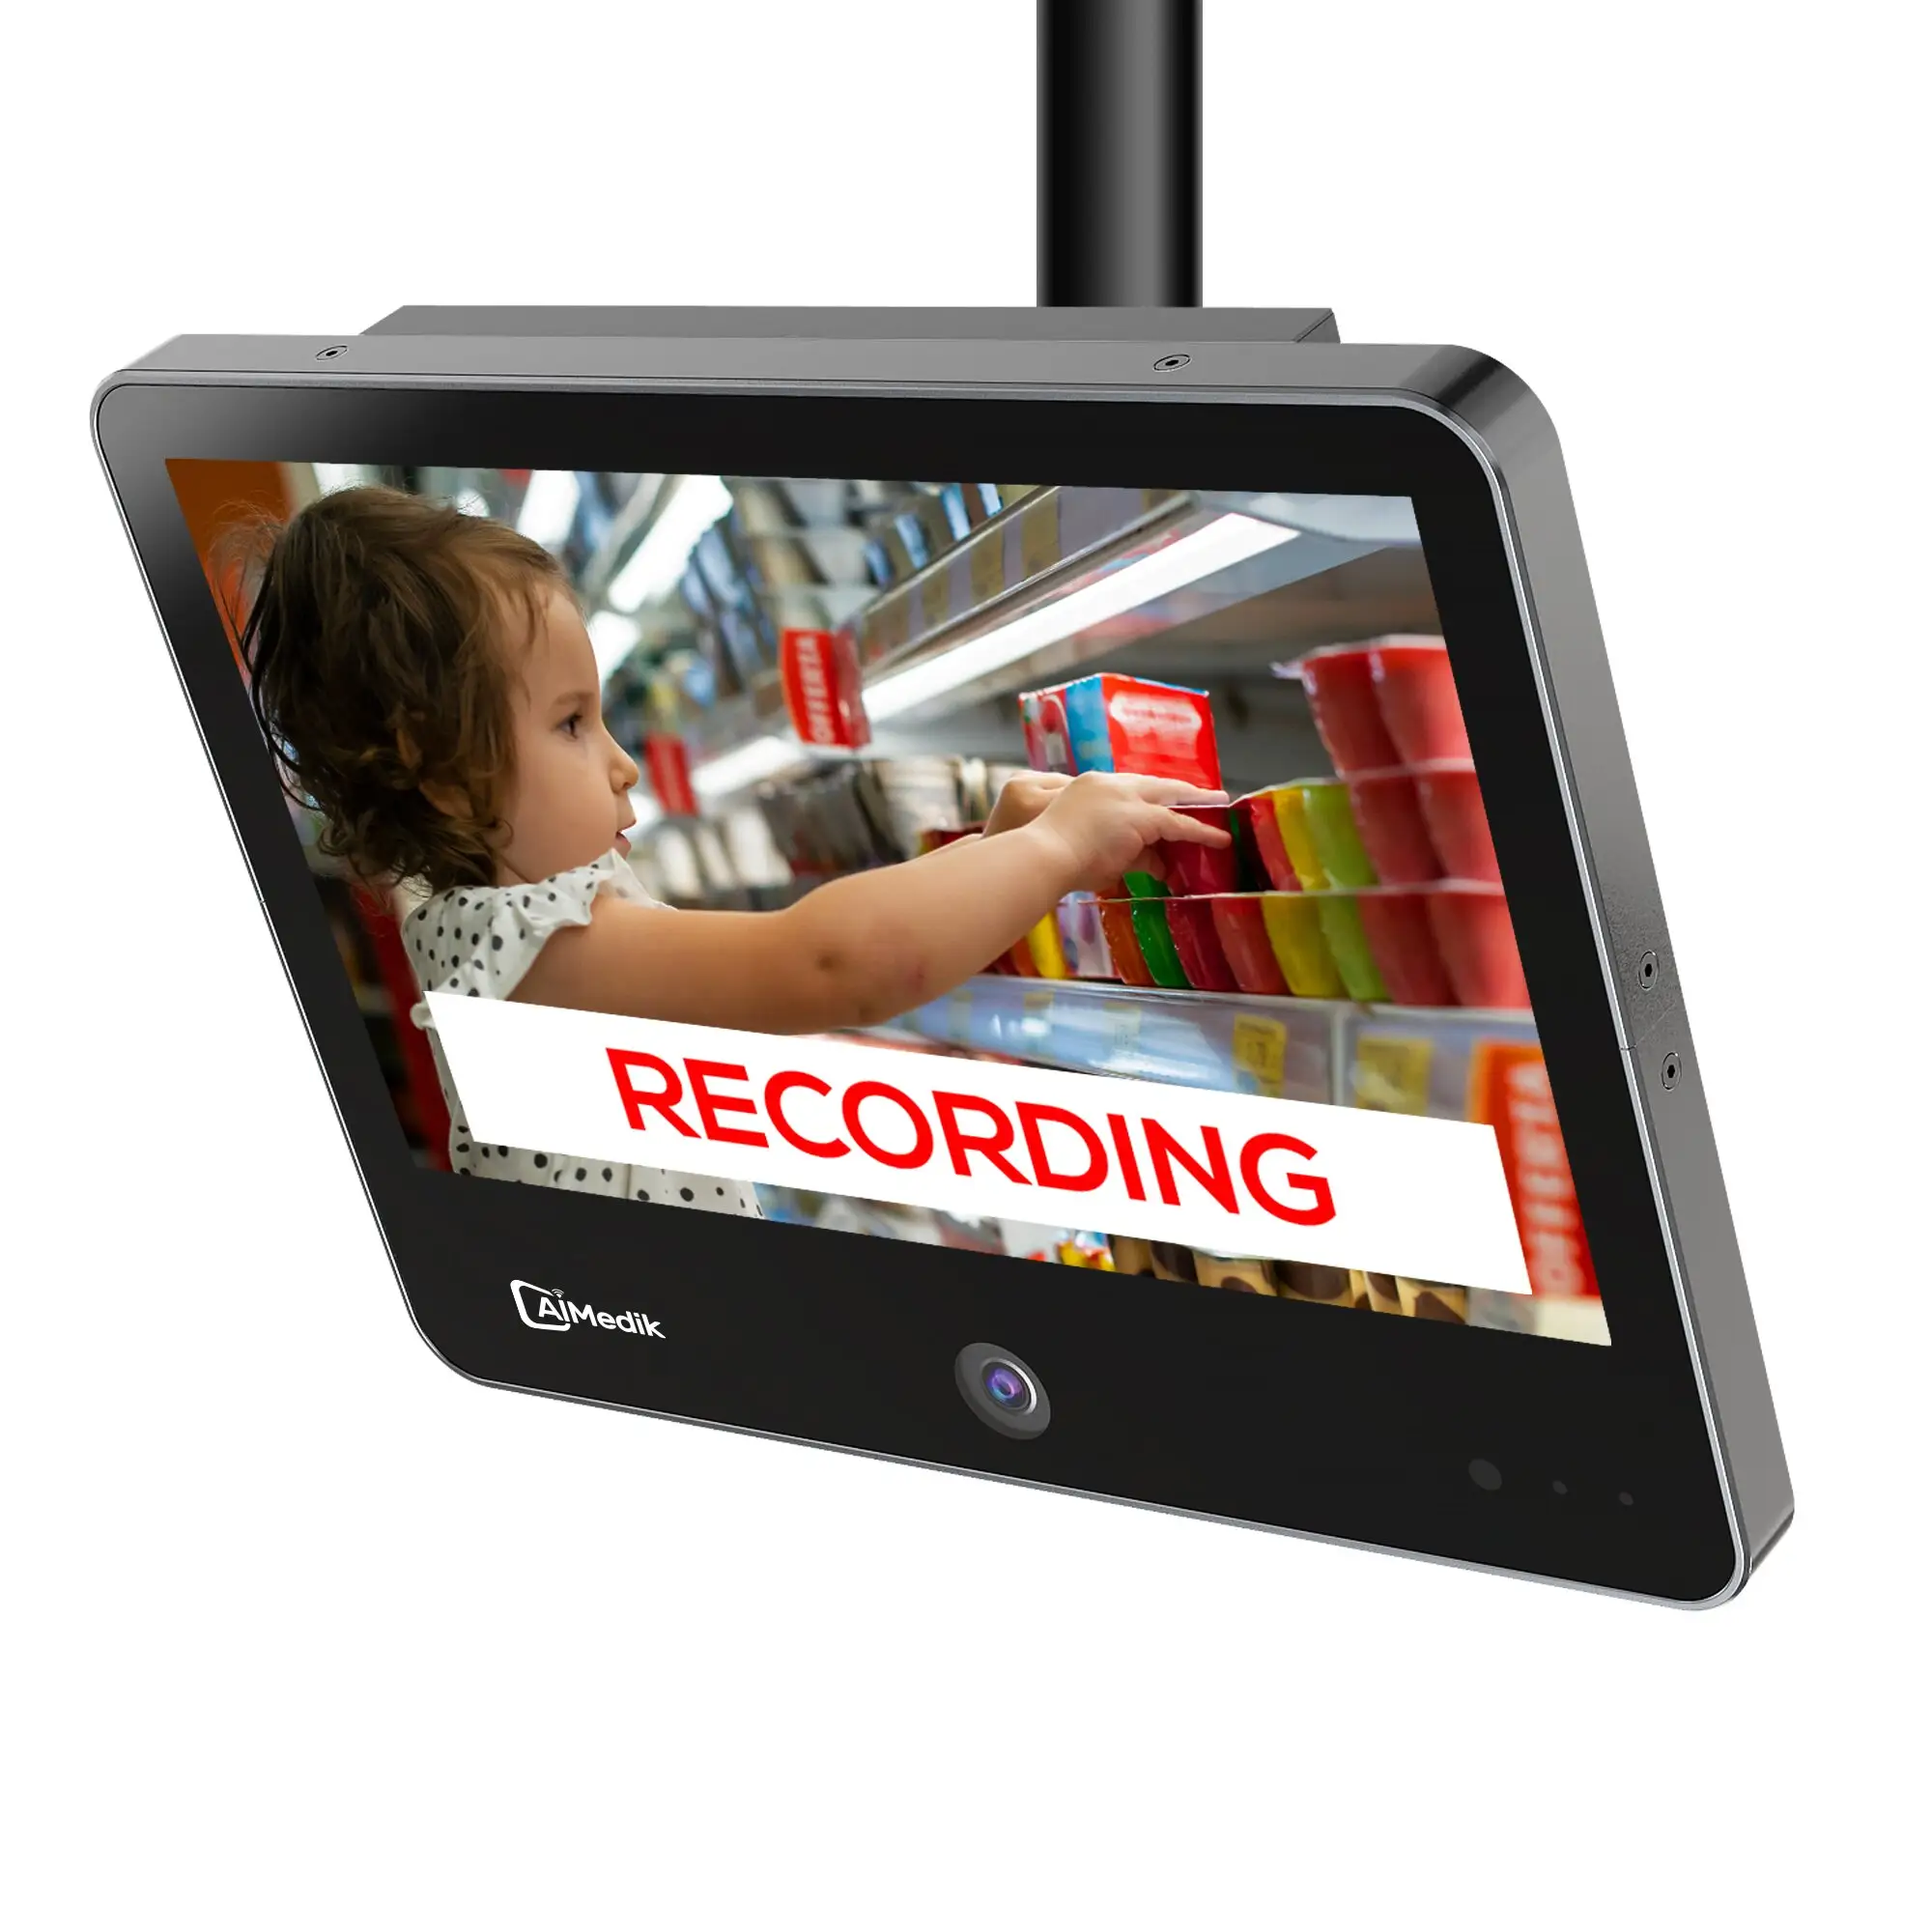 AIMEDIK 1080p 13.3 "퍼블릭 뷰 모니터는 슈퍼마켓 및 소매 환경을 위한 IP 카메라와 함께 제공됩니다